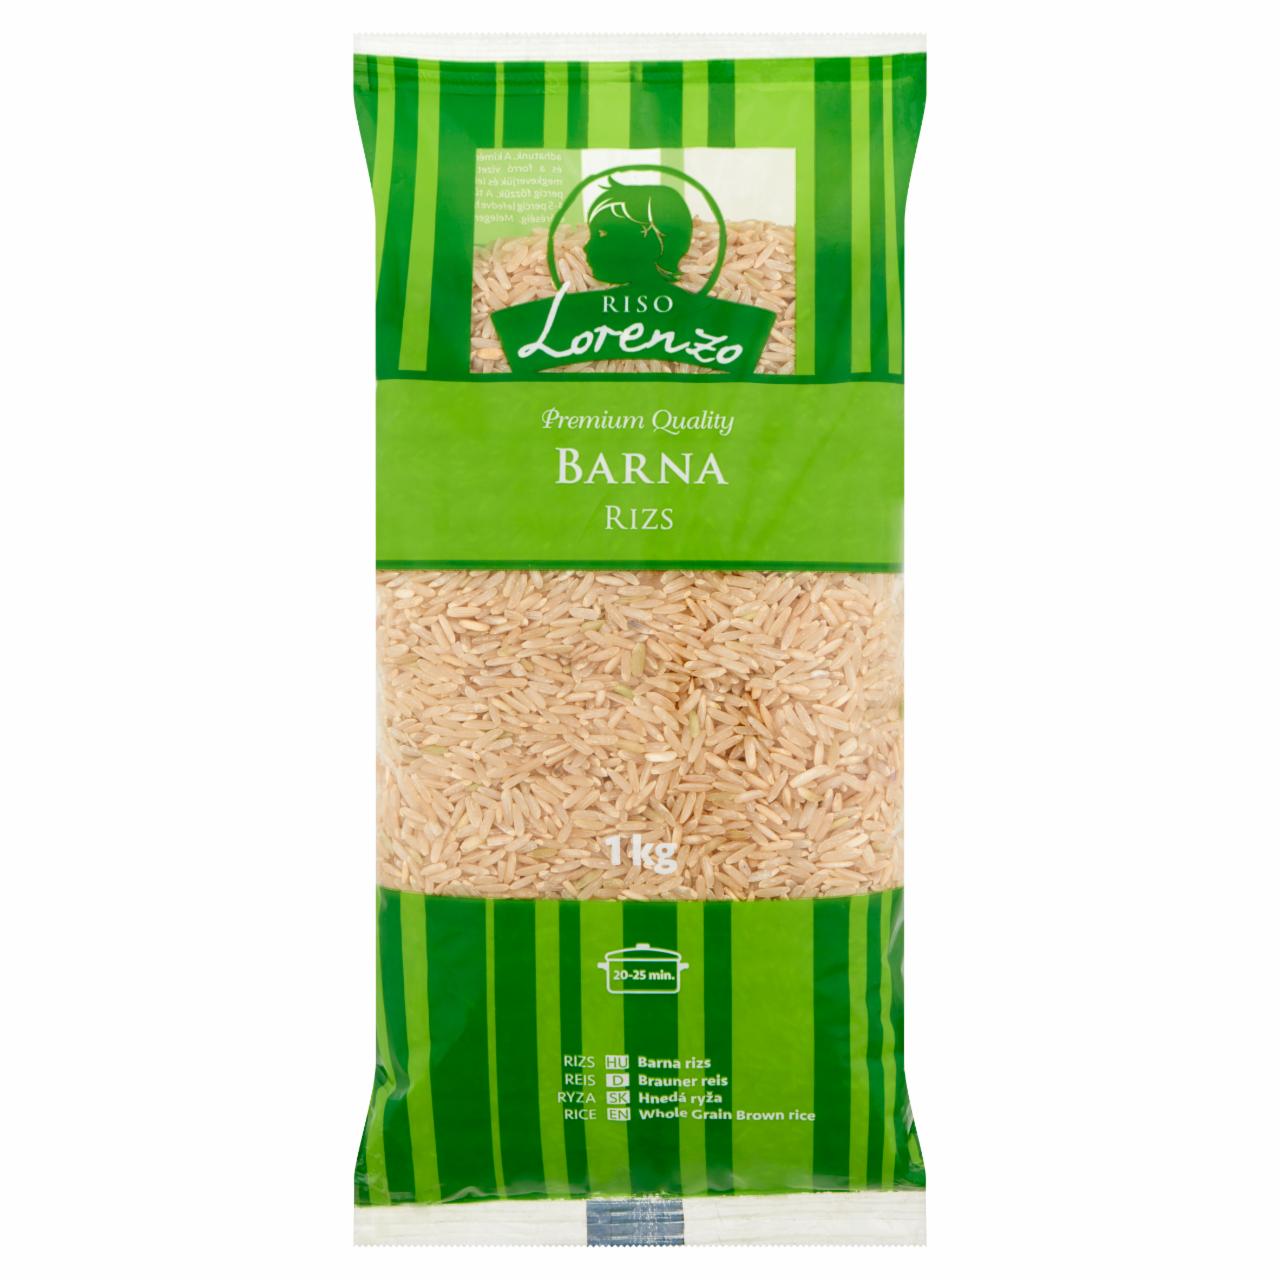 Képek - Lorenzo barna rizs 1 kg